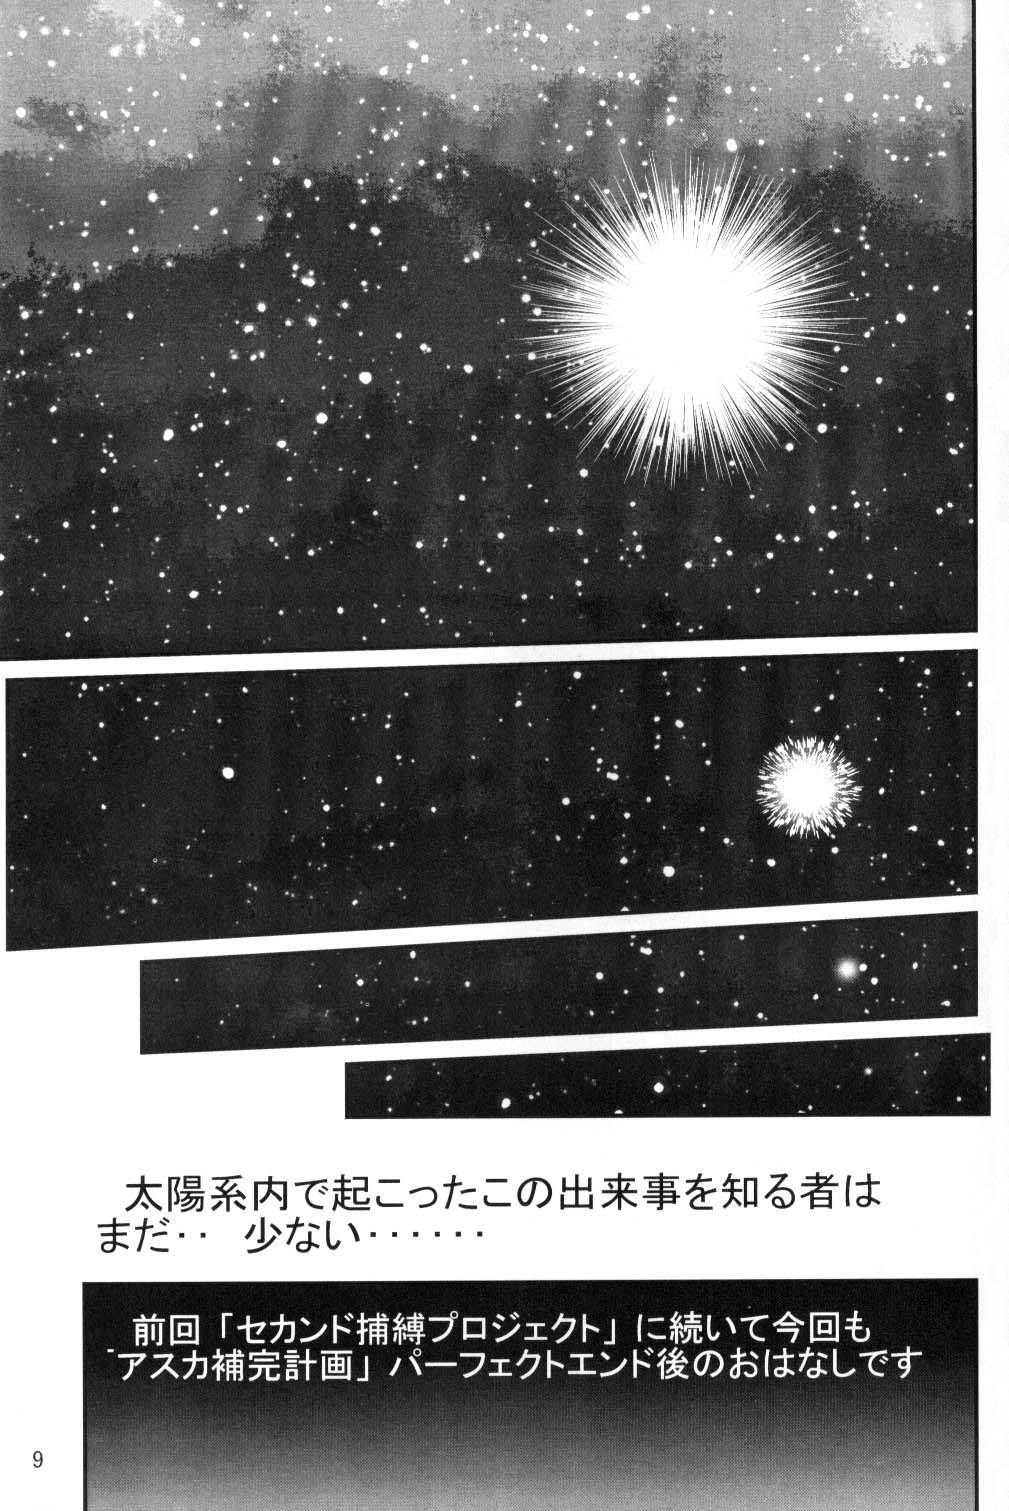 [Thirty Saver Street 2D Shooting (Maki Hideto, Sawara Kazumitsu, Yonige-ya No Kyou)] Second Uchuu Keikaku (Neon Genesis Evangelion) page 8 full